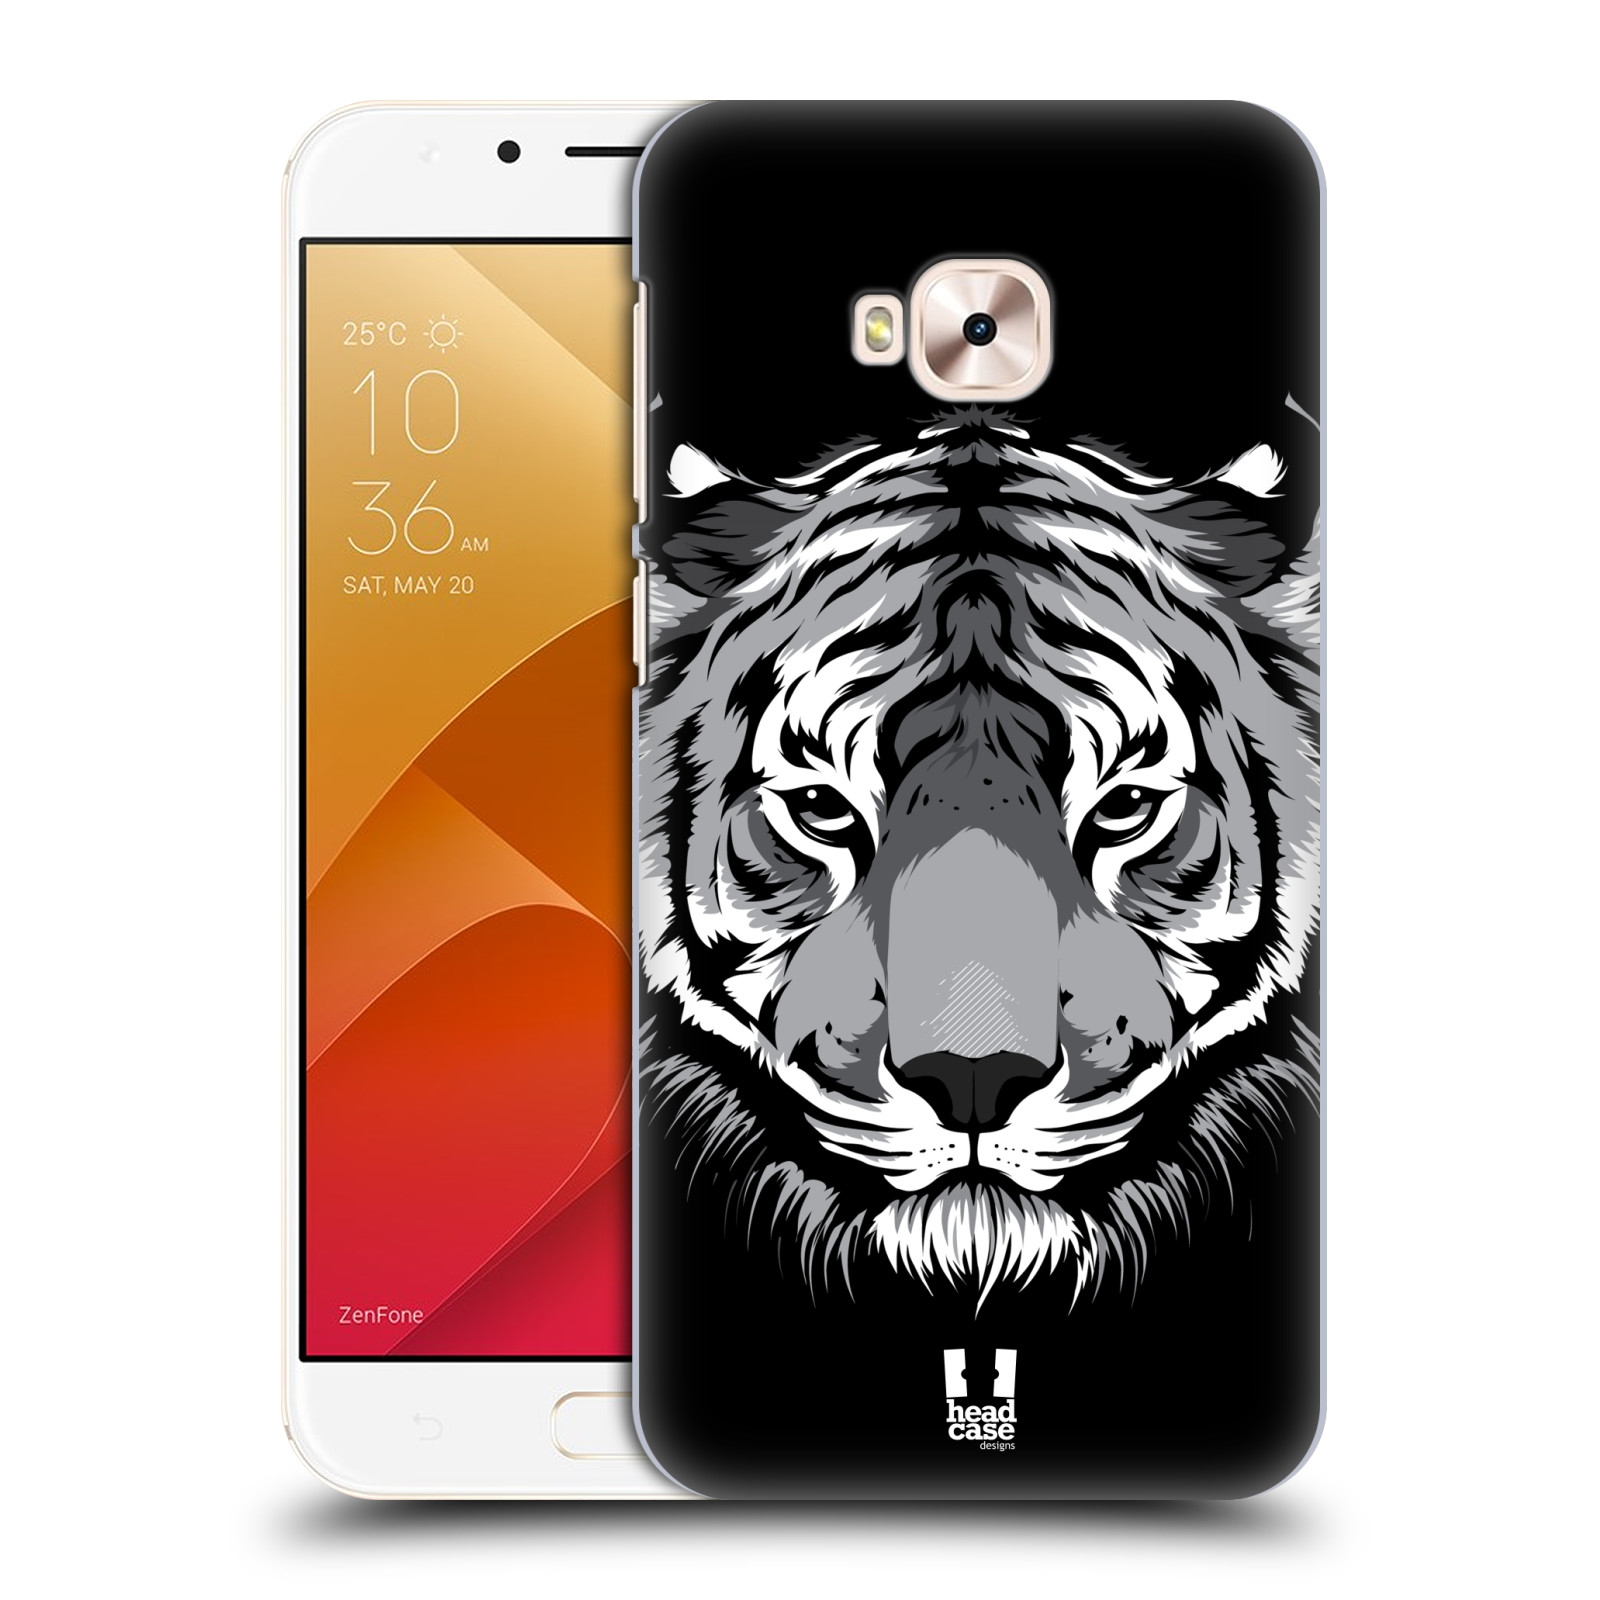 HEAD CASE plastový obal na mobil Asus Zenfone 4 Selfie Pro ZD552KL vzor Zvíře kreslená tvář 2 tygr